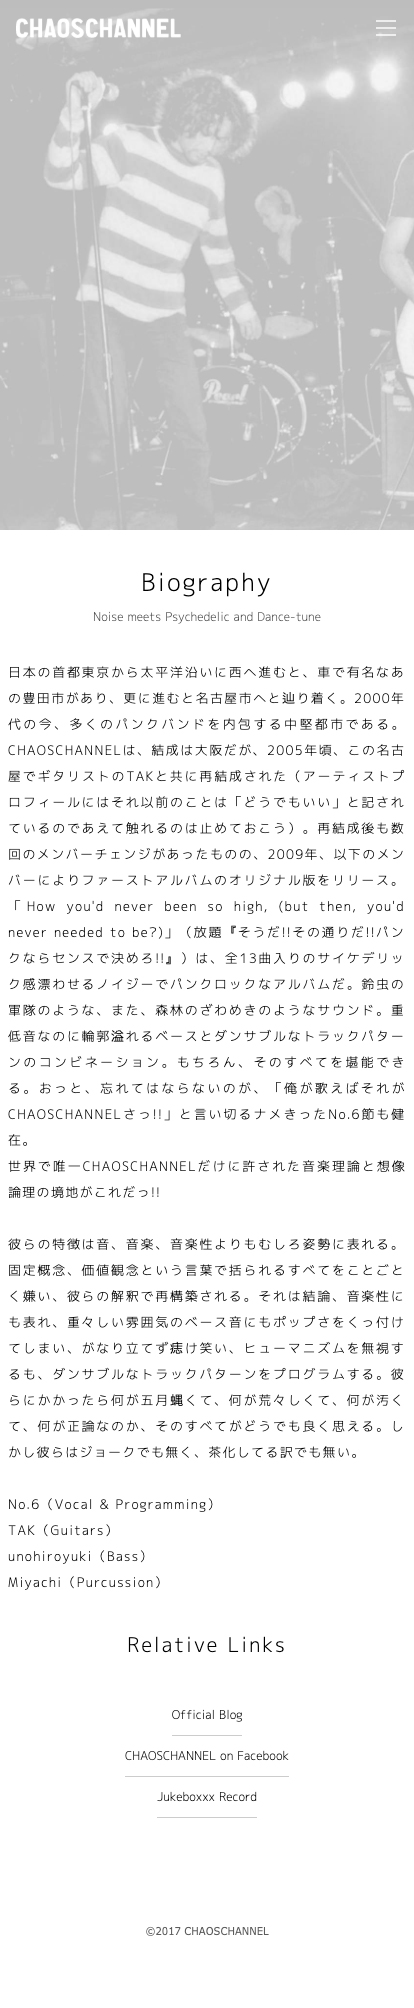 chaoschannel_h.jpg